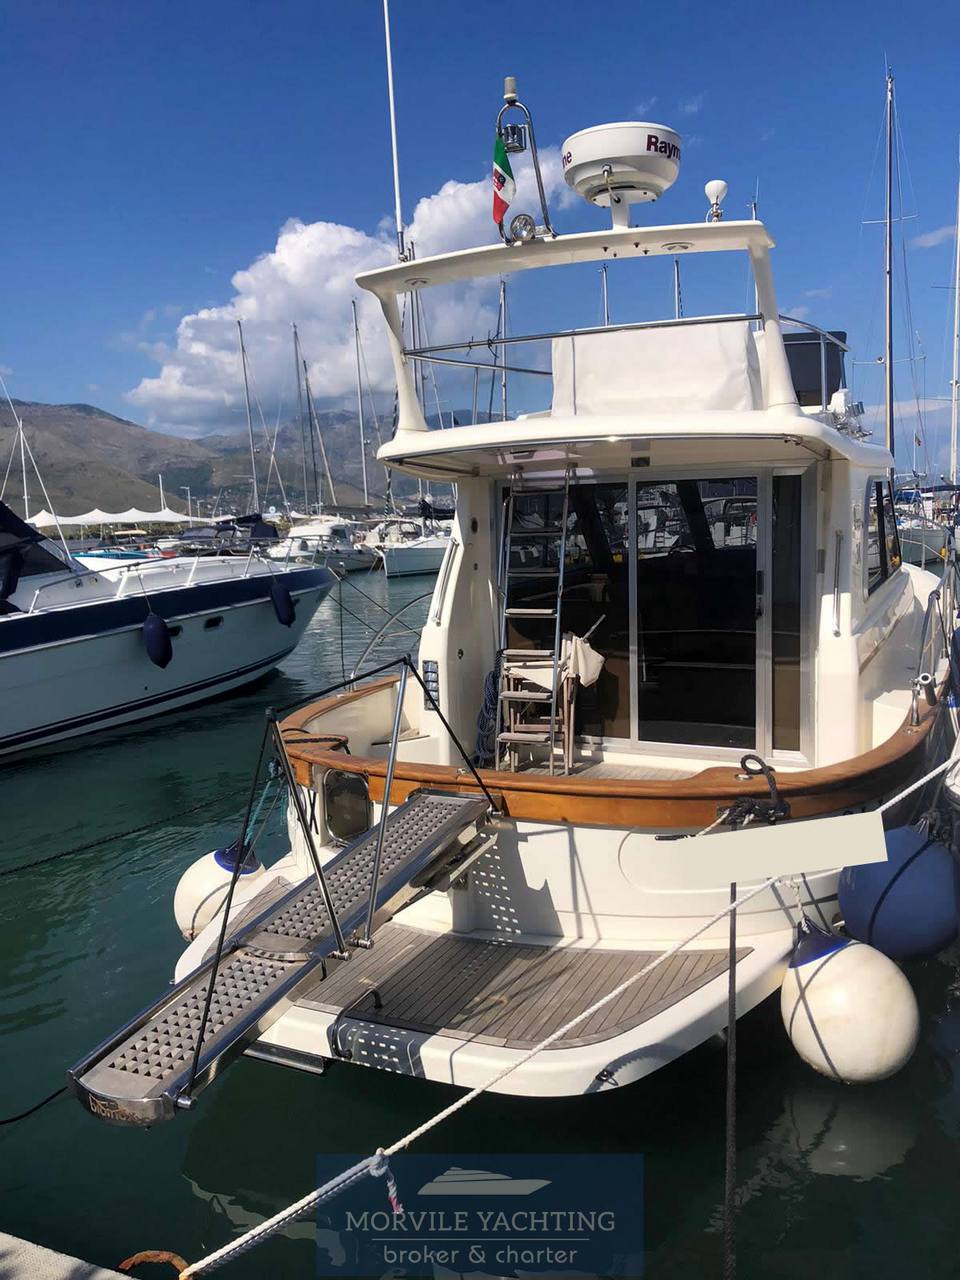 Sciallino S 34 Моторная лодка используется для продажи